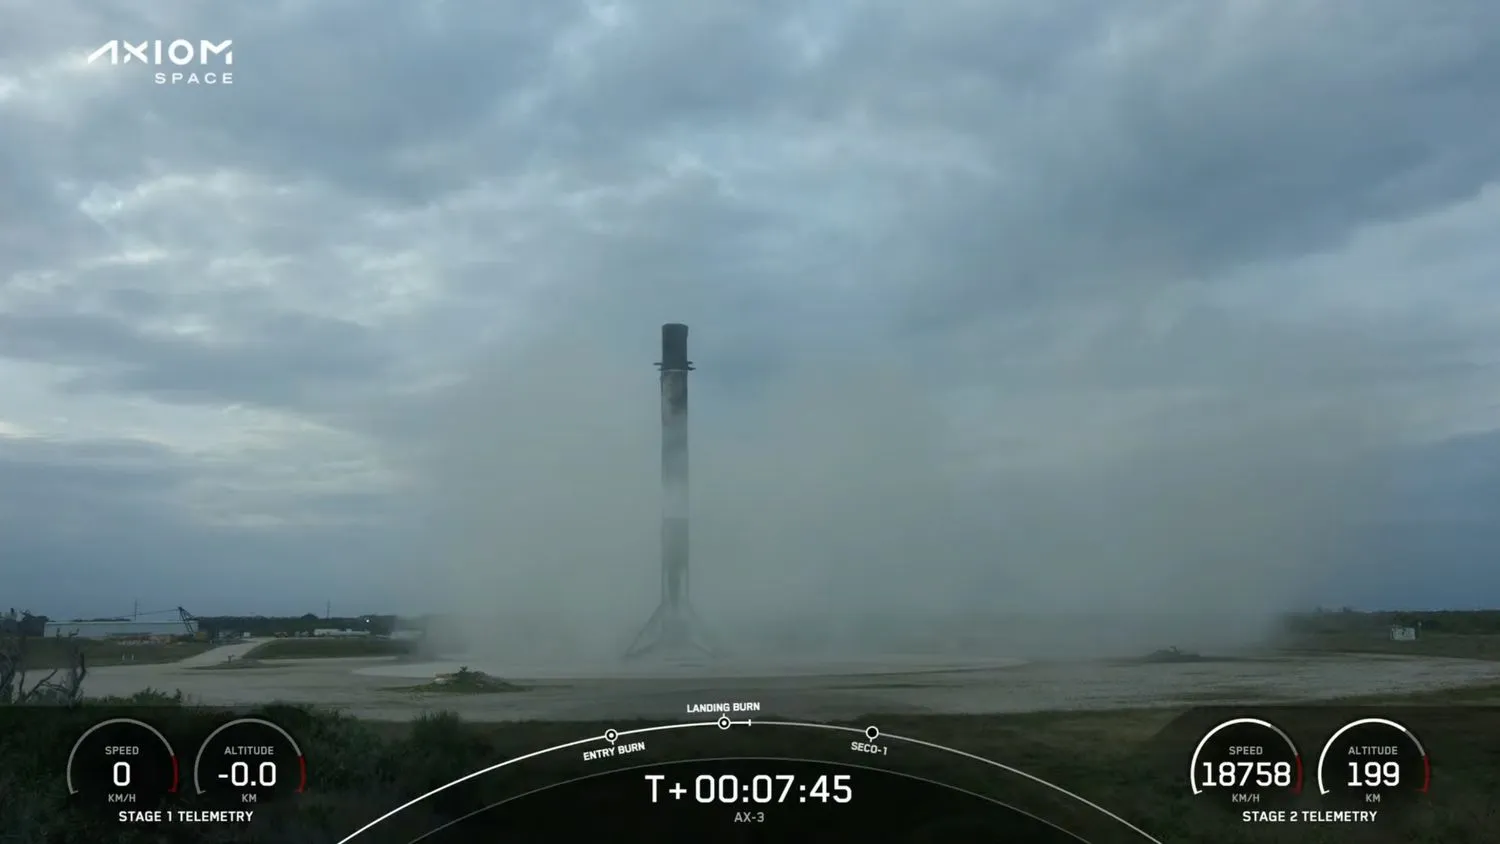 Eine schwarz-weiße Rakete sitzt auf einem Landeplatz, umgeben von einer feinen Staub- und Abgaswolke.